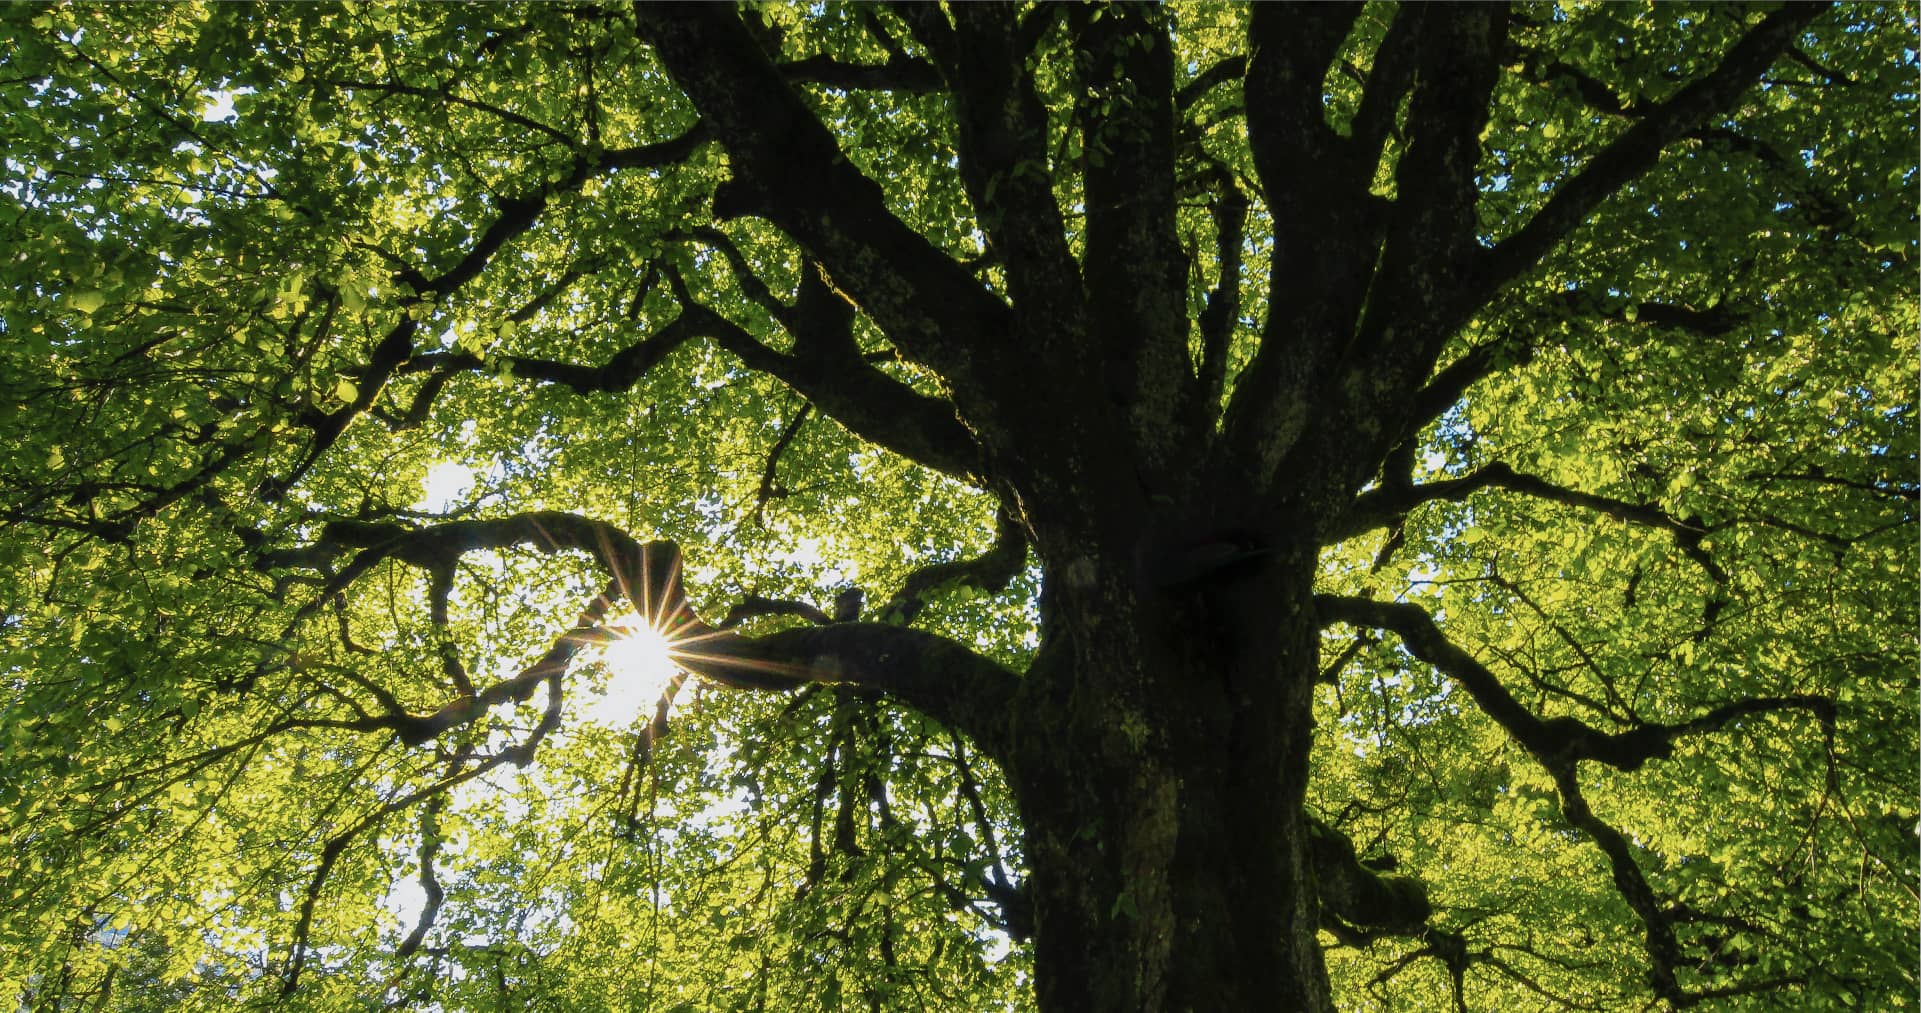 Τα σούπερ δέντρα που θα καταπολεμήσουν την κλιματική αλλαγή